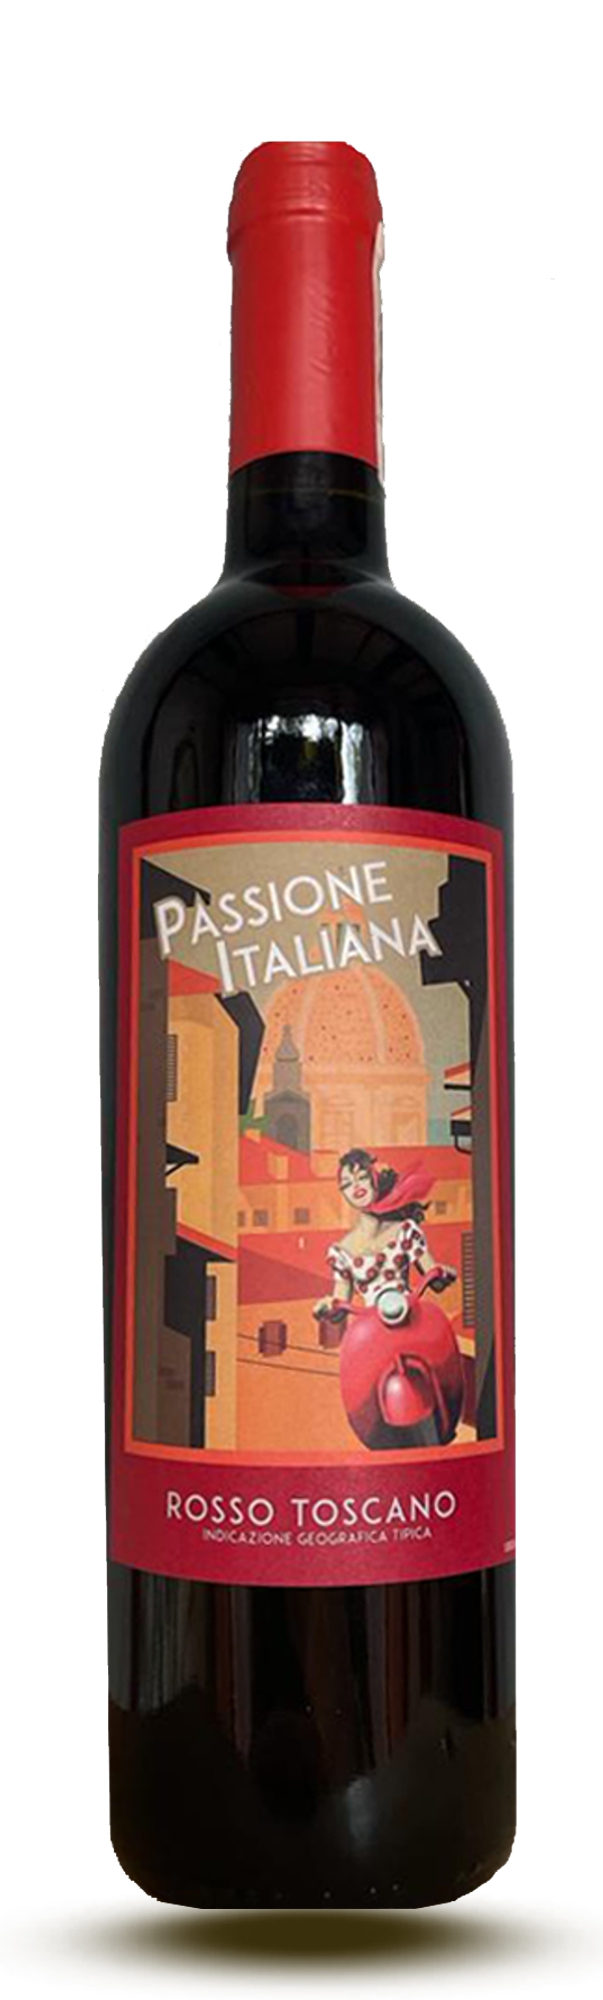 Passione Italiana, Rosso Toscano 